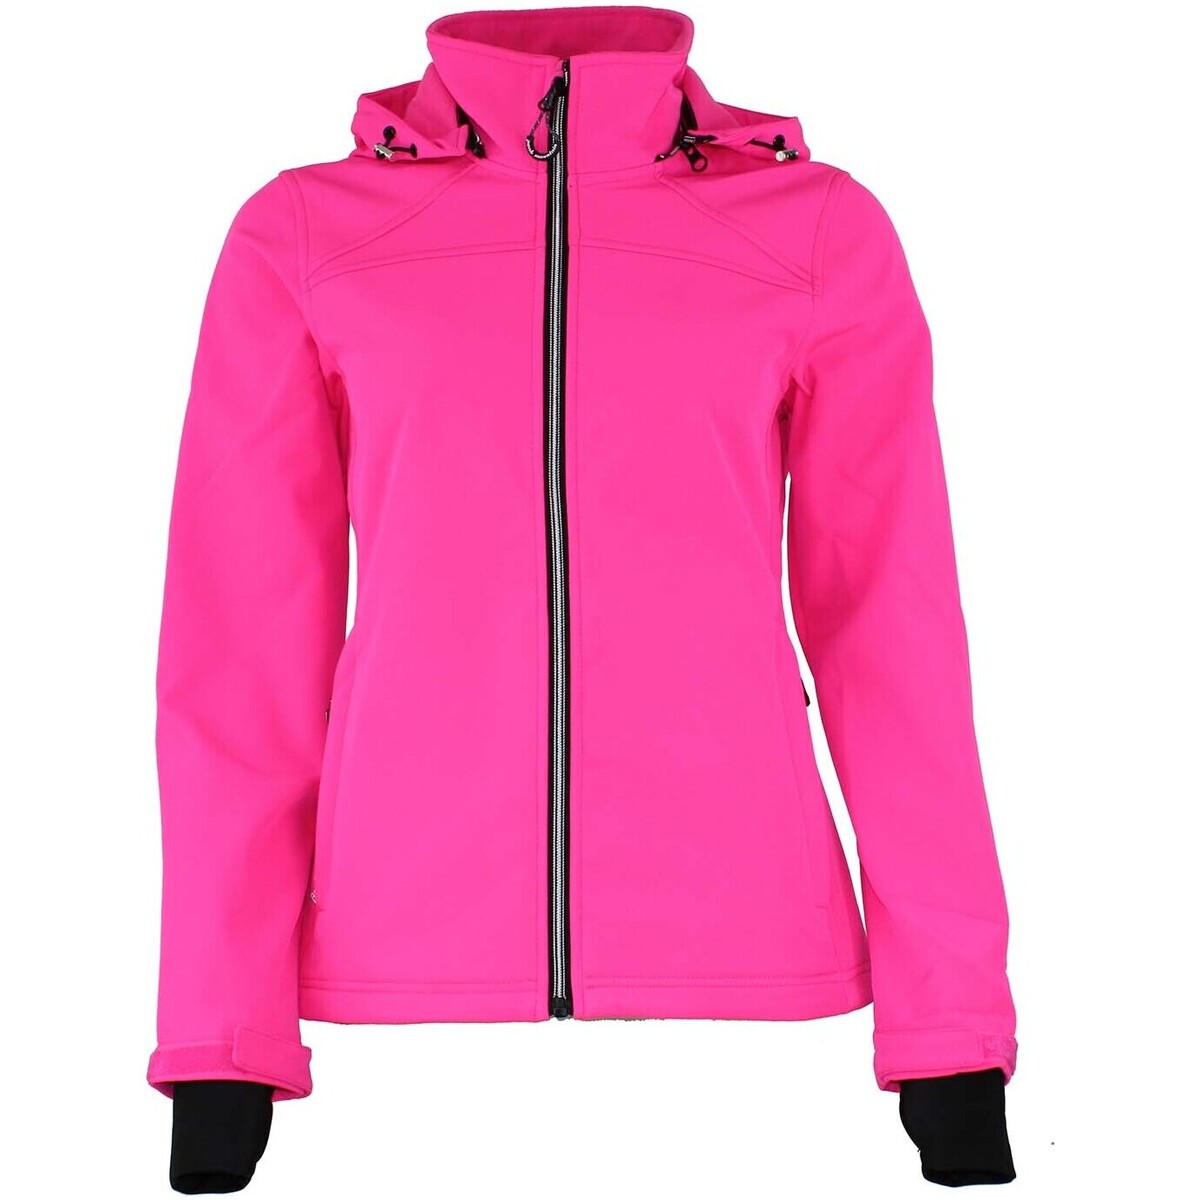 Textiel femme 62,32 € AFORI softshell Roze Mountain - Wind jackets Blouson Dames Peak